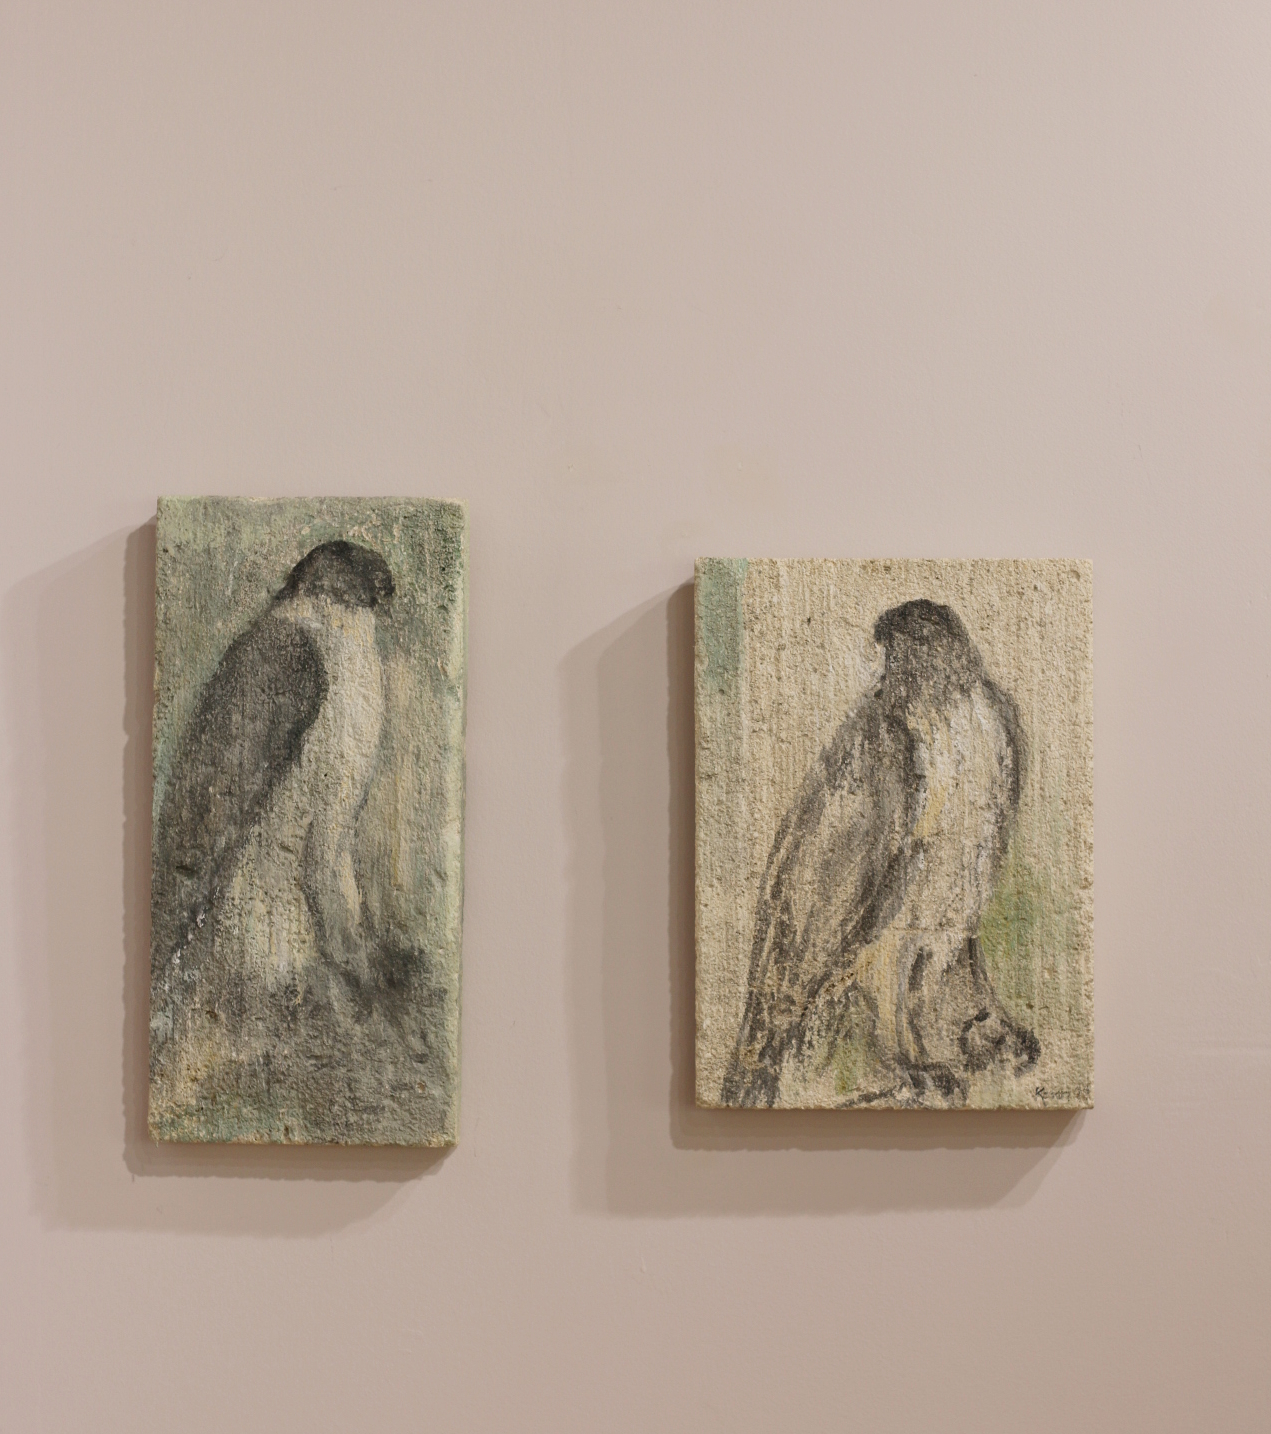  "Raptors" on limestone tablets by Jane Rosen 